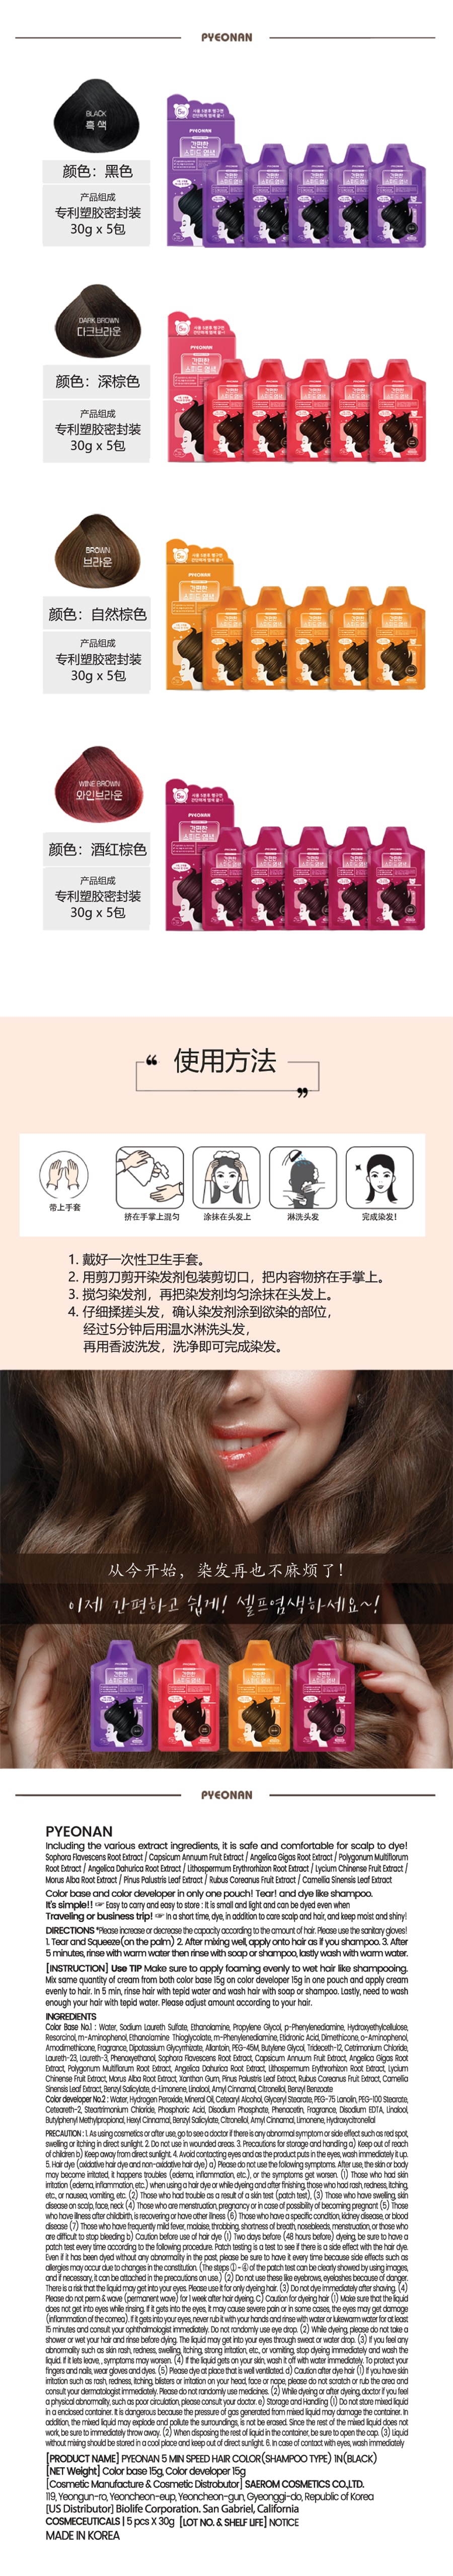 韓國 PYEONAN 5分鐘快速超簡單 香波型染髮劑 #淺棕色 5包/盒